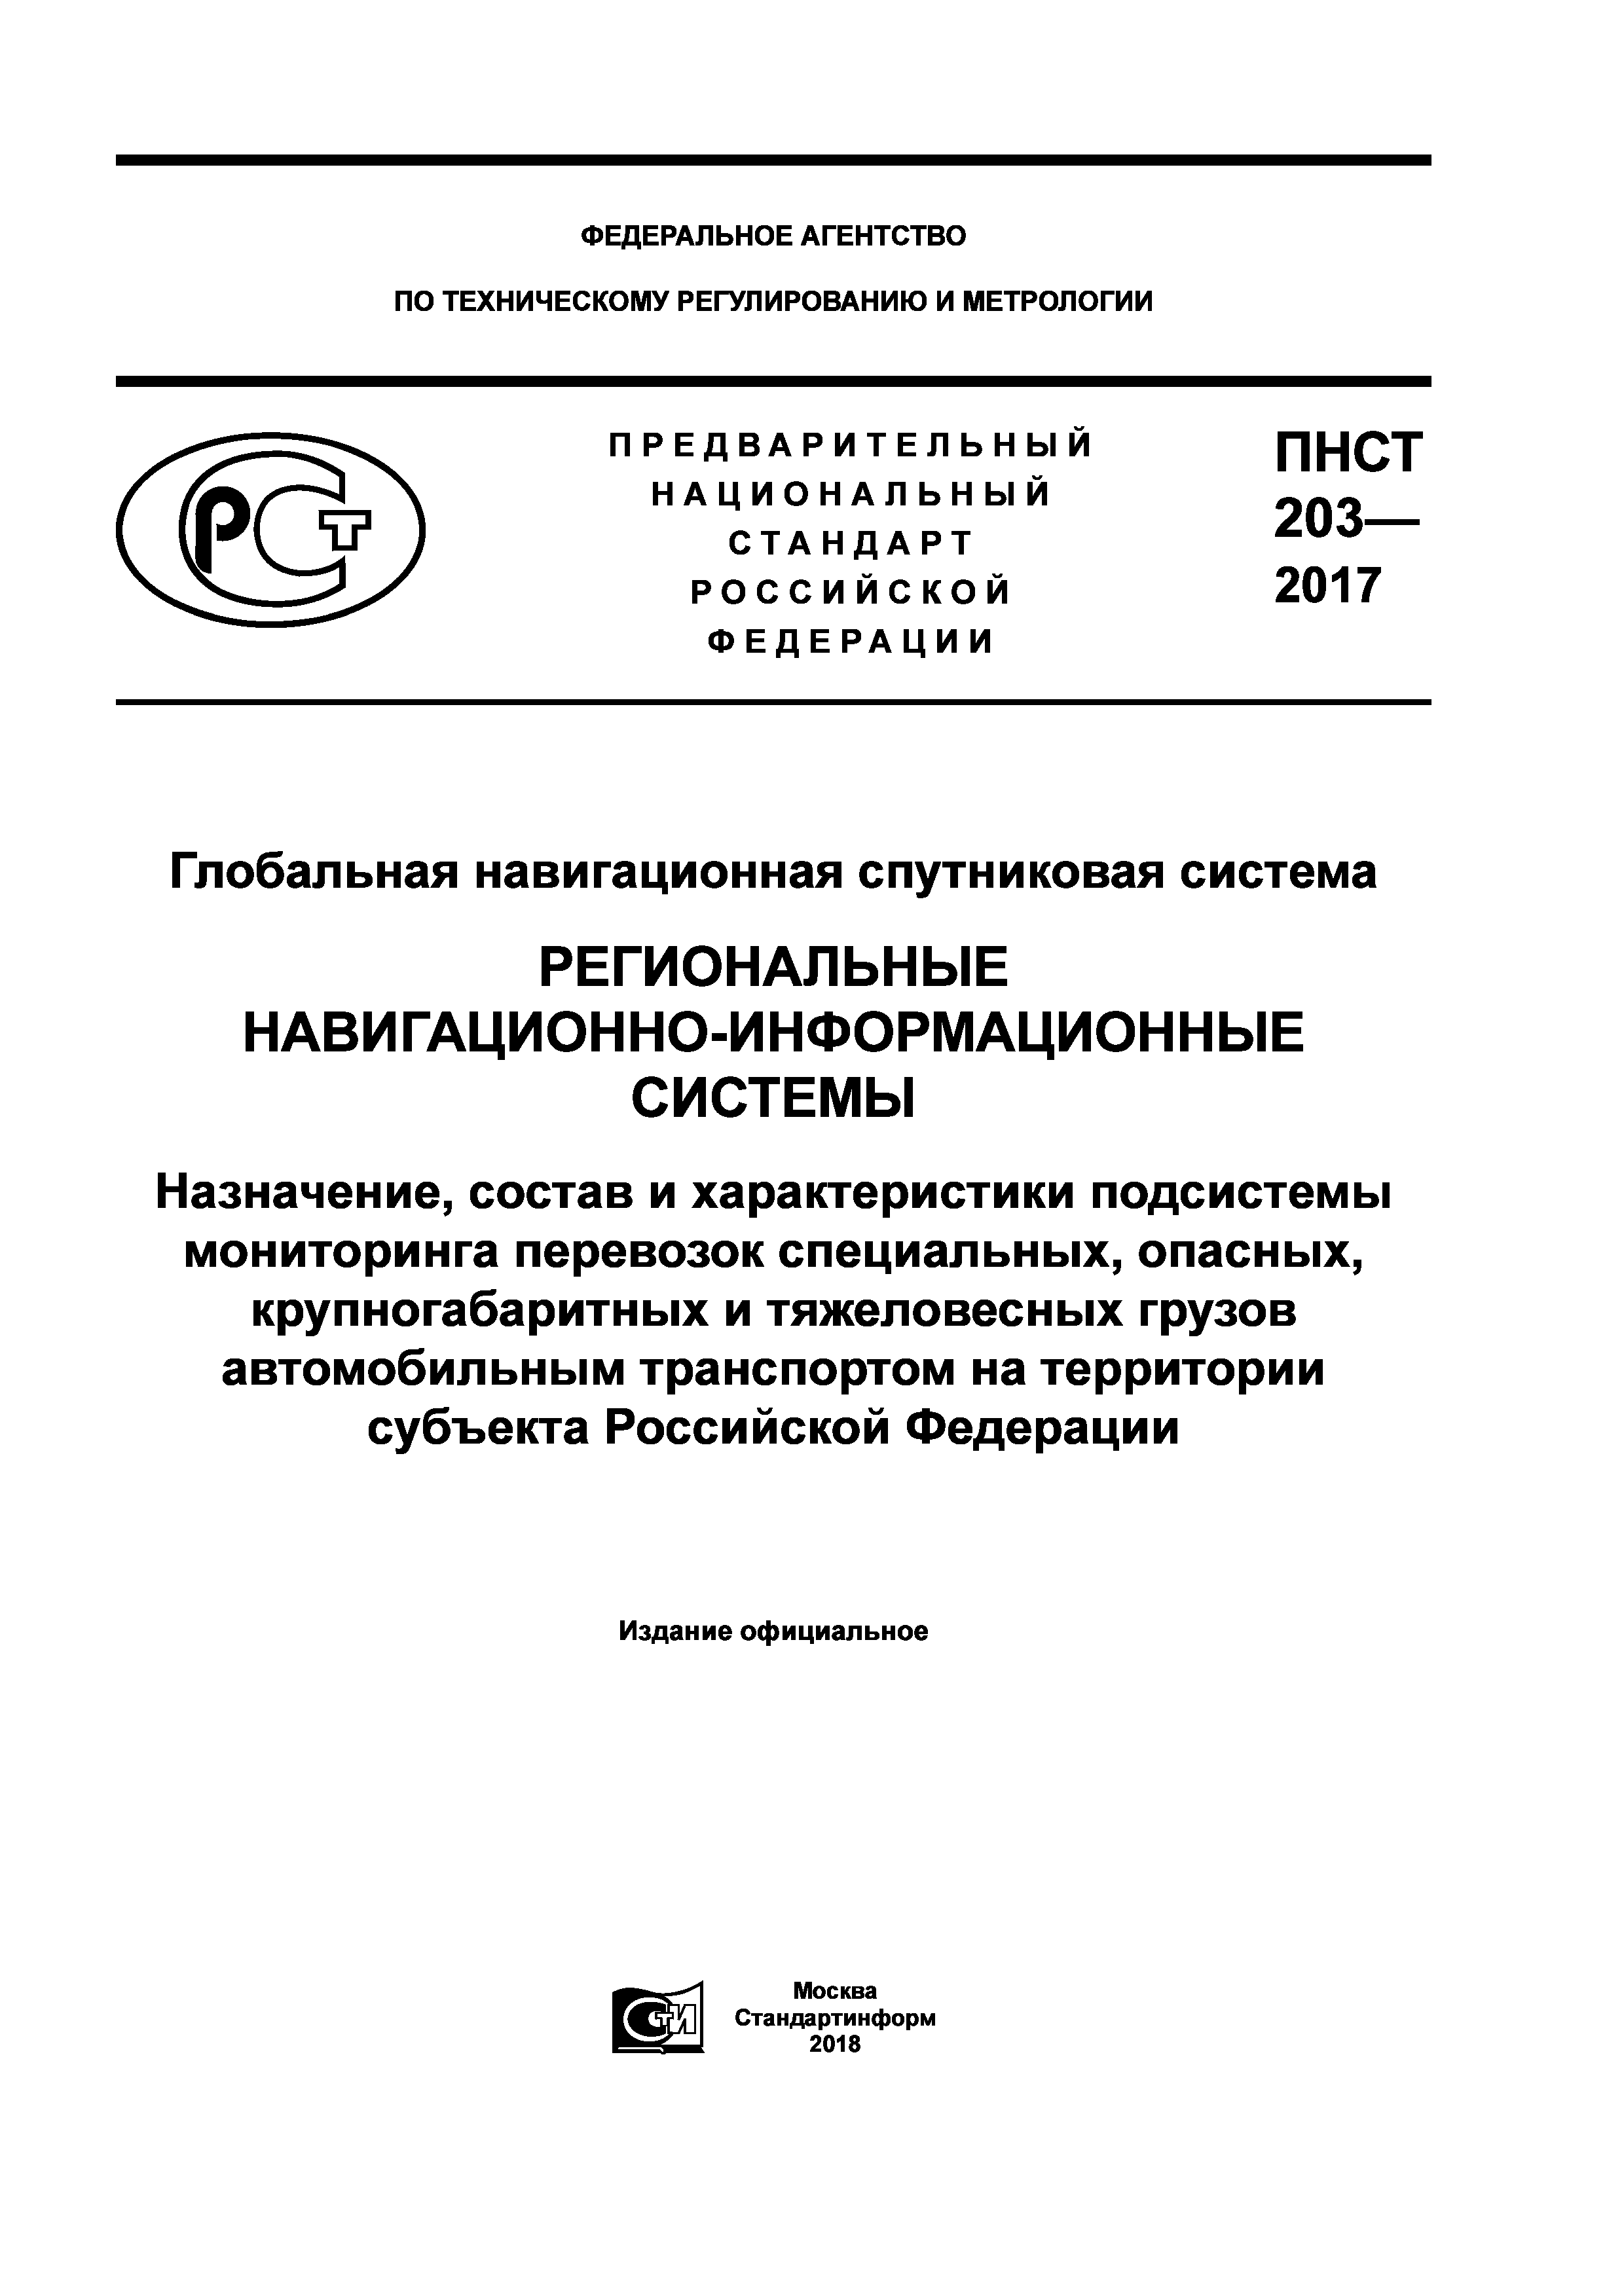 ПНСТ 203-2017